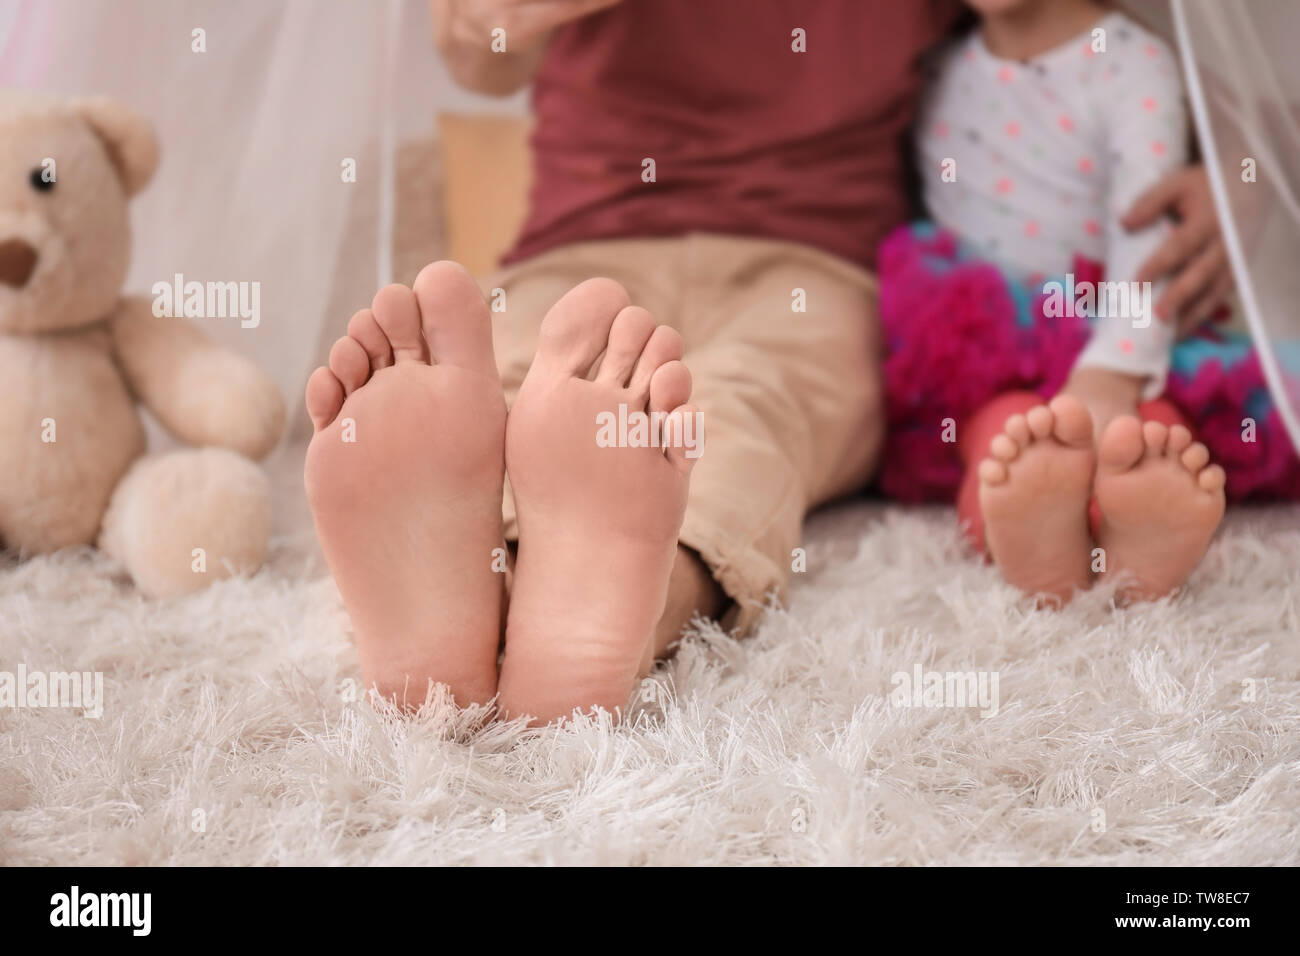 Descalzo padre y su pequeña hija sentado sobre una alfombra en casa Foto de stock